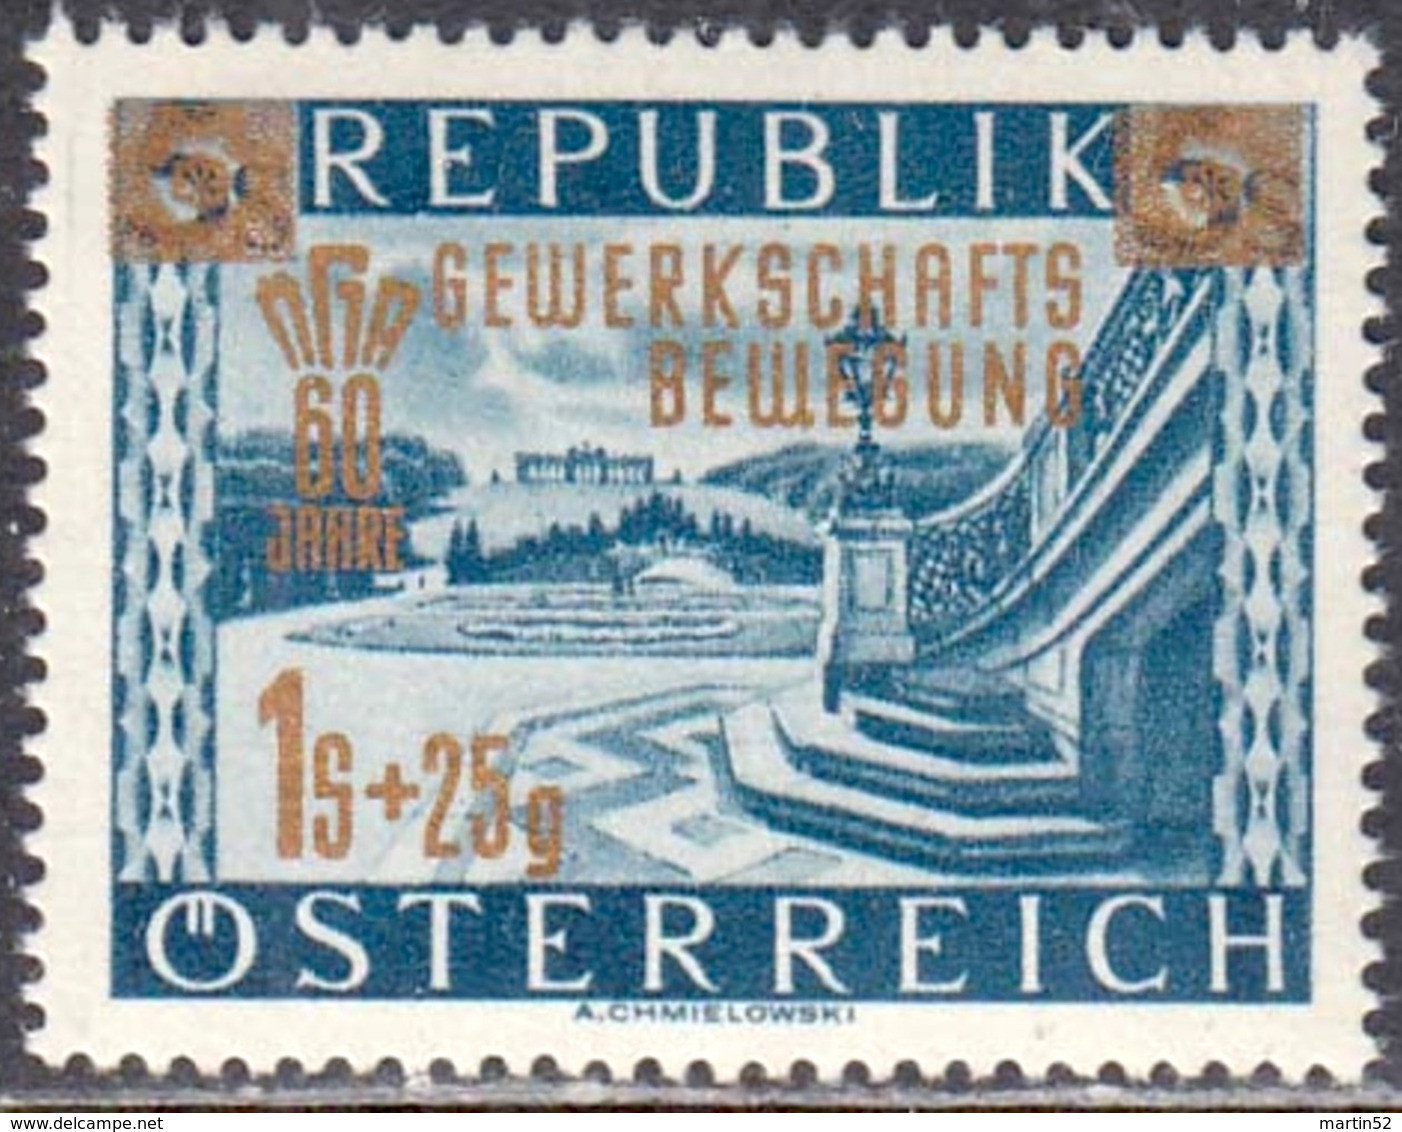 Austria Autriche Österreich 1953: Aufdruck GEWERKSCHAFTS-BEWEGUNG Michel-No. 983 ** Postfrisch MNH (Michel 3.00 Euro) - Unused Stamps